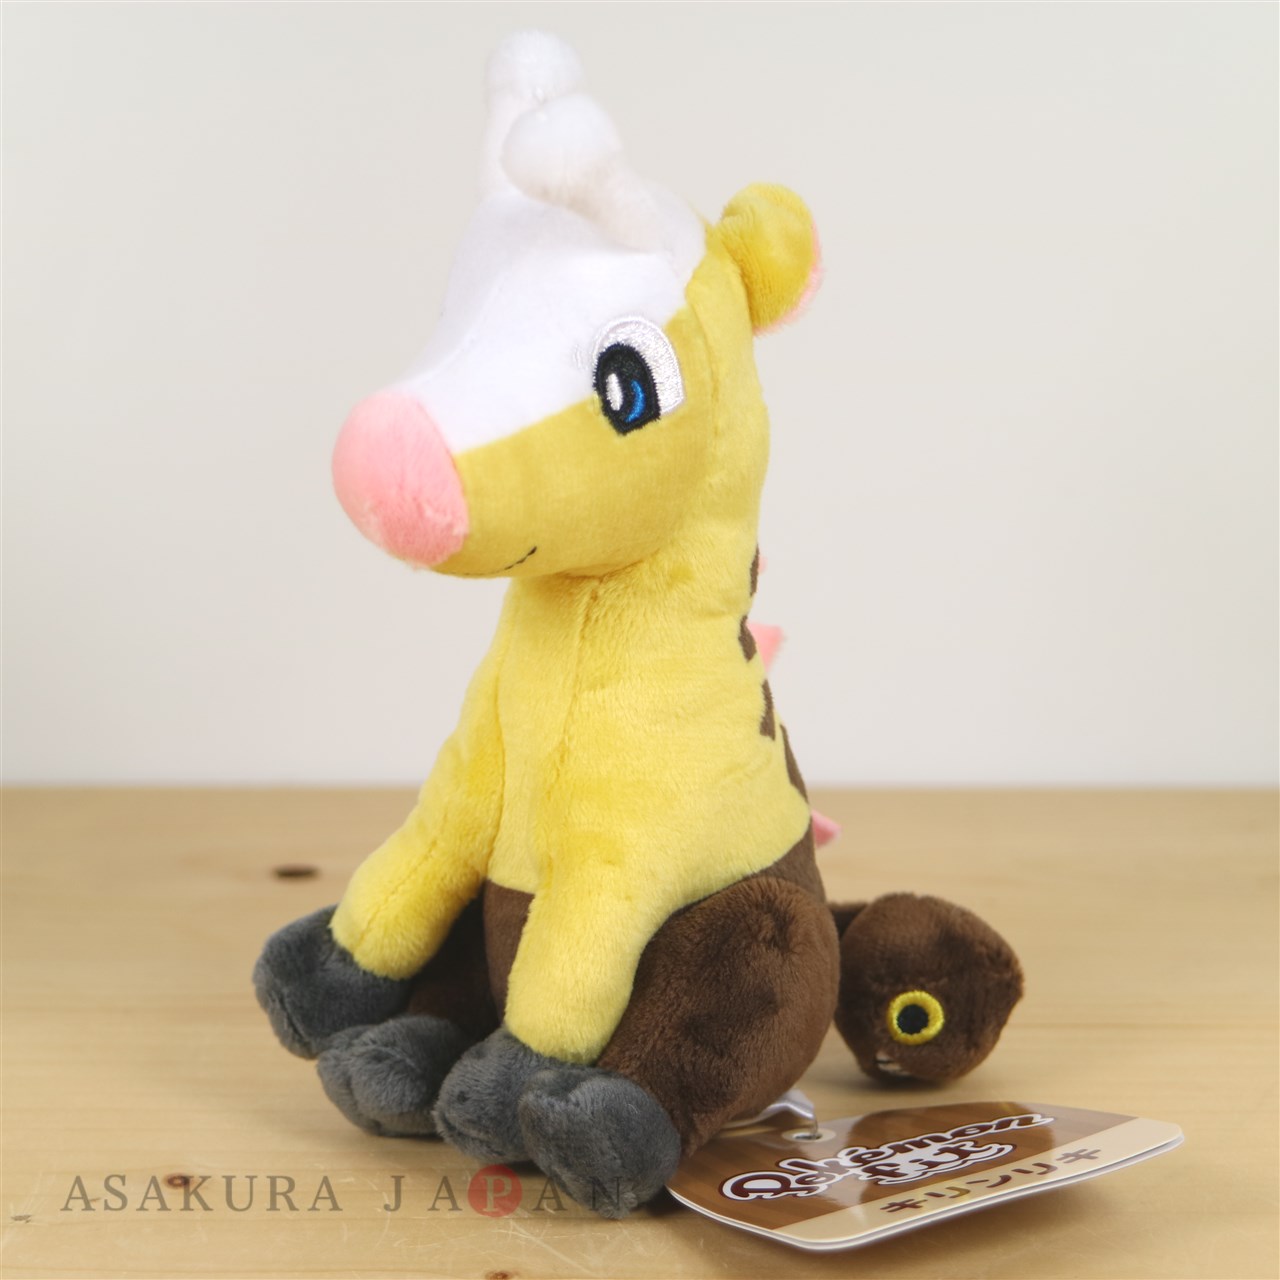 3 2019 Japan Details about   Girafarig Kirinriki Plush Doll Pokemon fit Ver